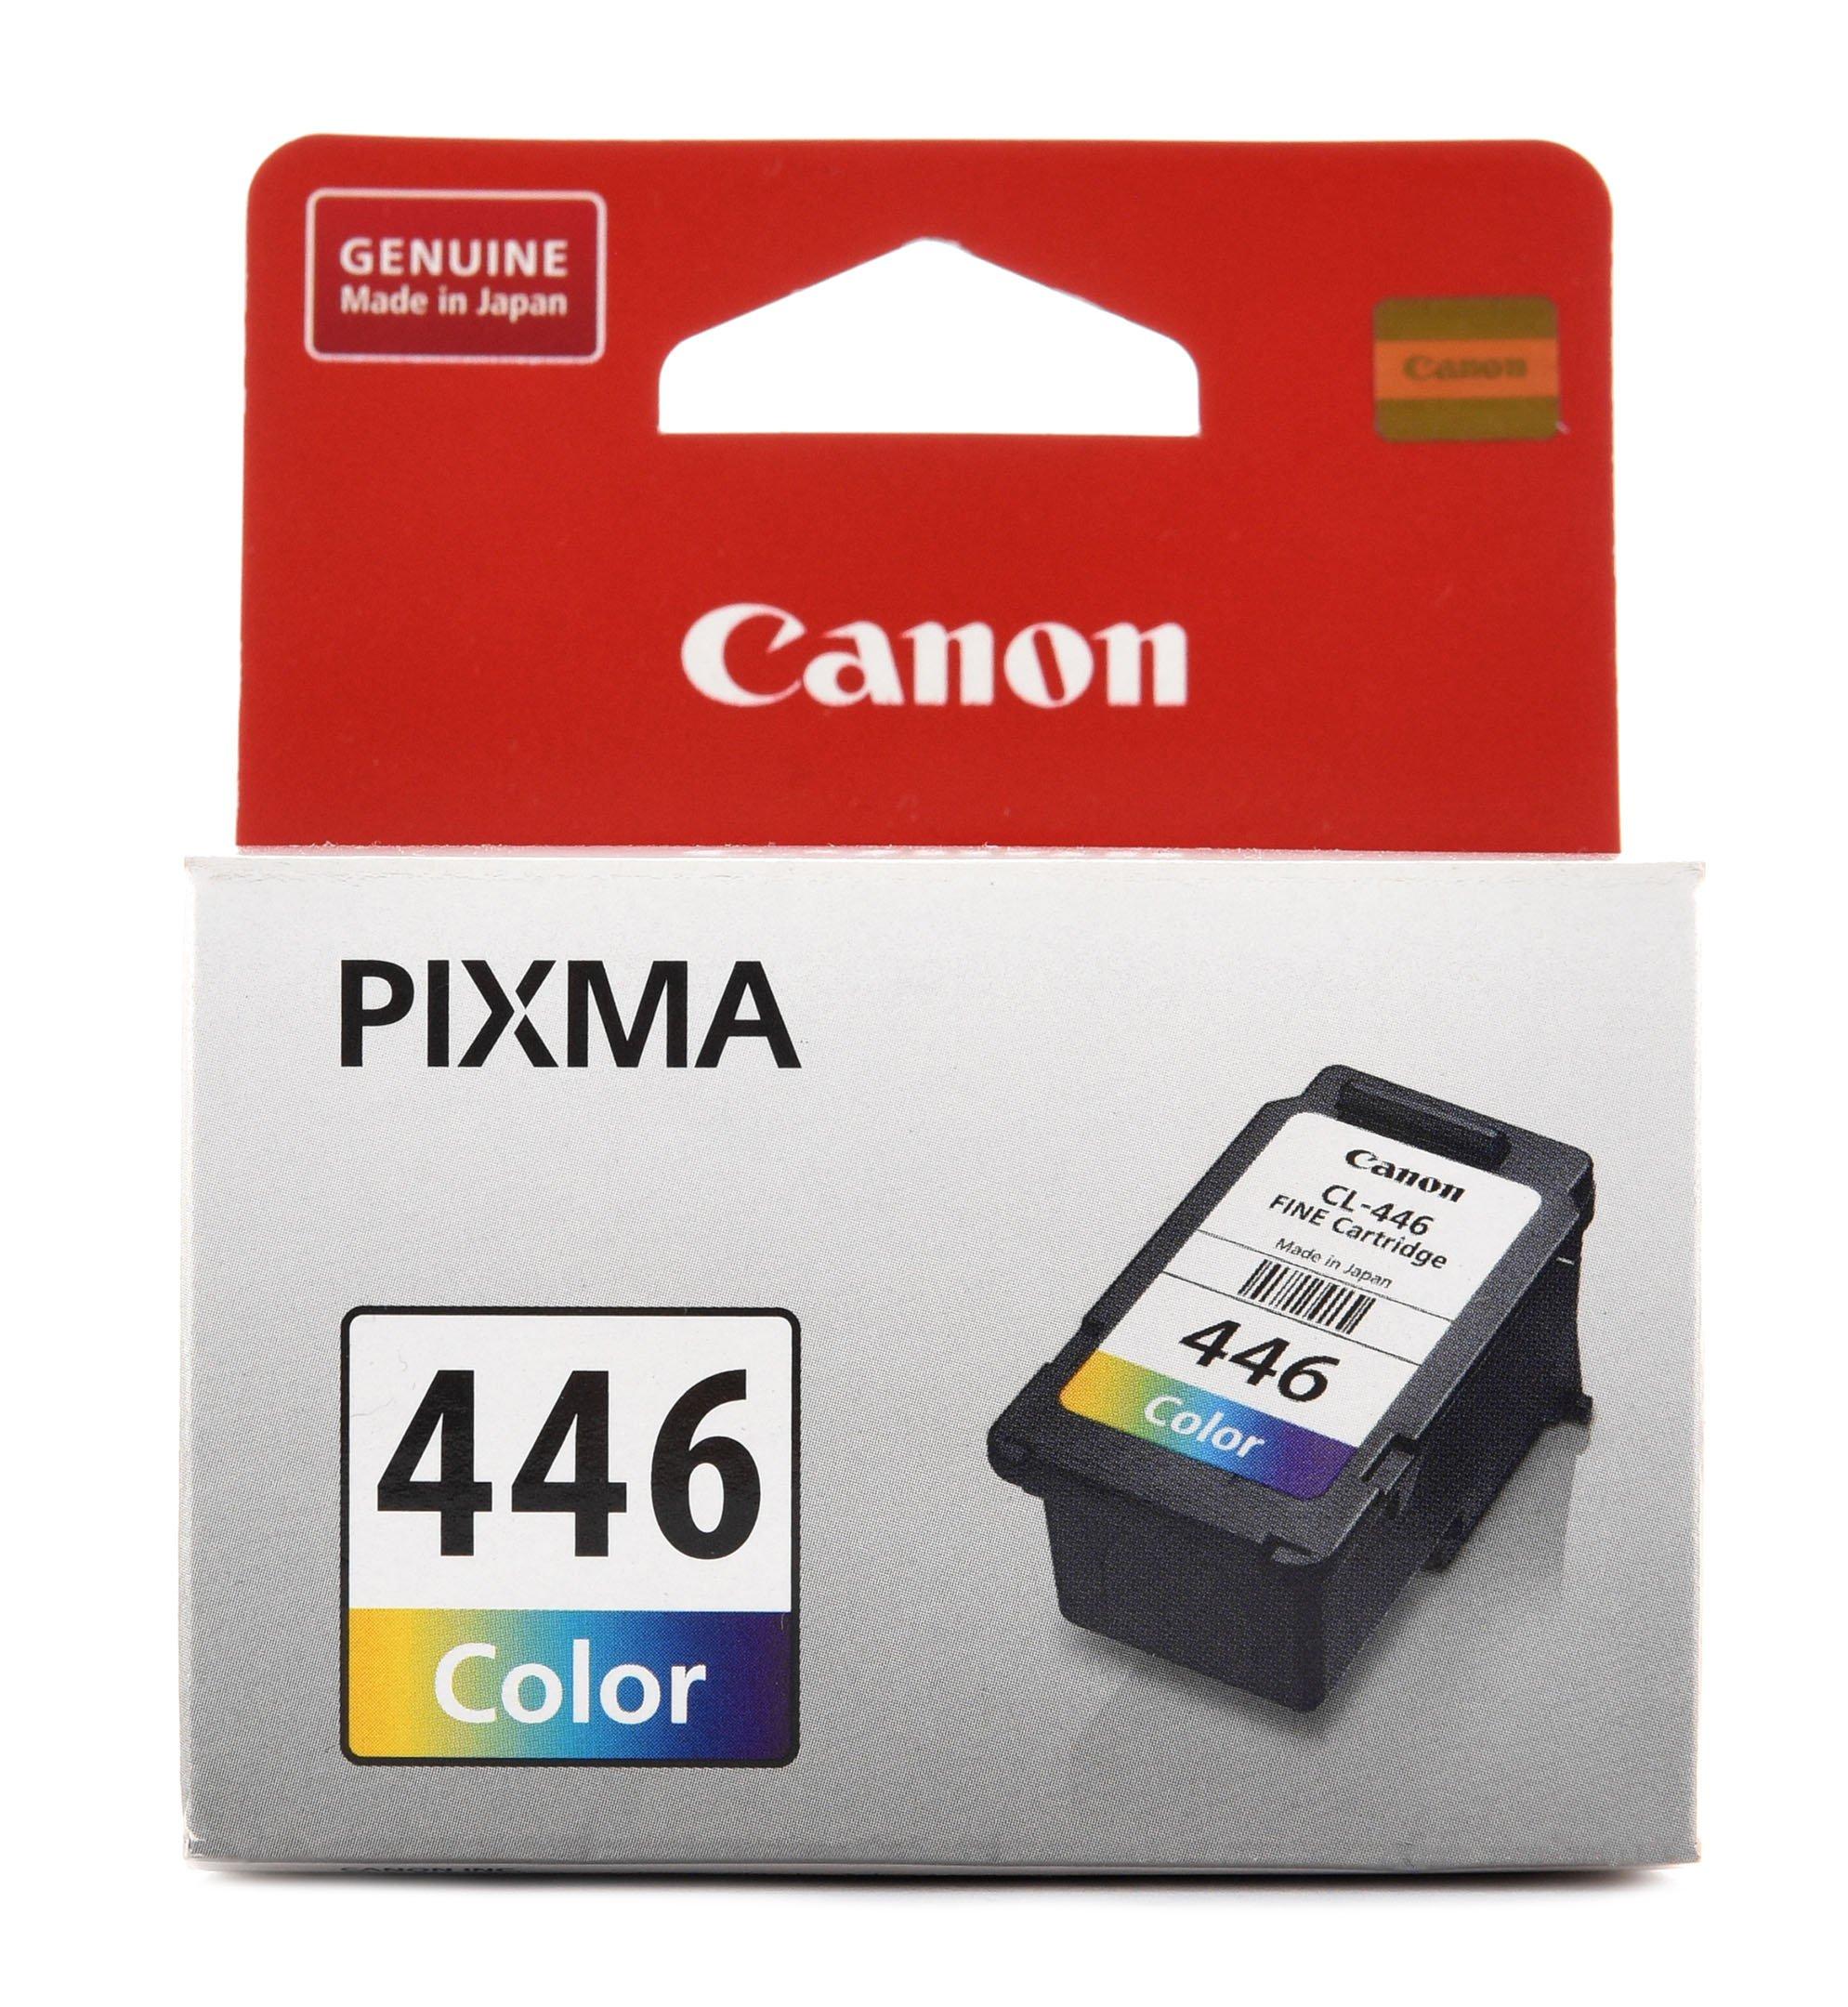 Картриджи canon pixma mg. Canon CL 446 Color. Картридж Canon 446. Картридж Canon PIXMA mx2440/2540 (o) PG-445, BK. Картридж Canon PG-445 8283b001.